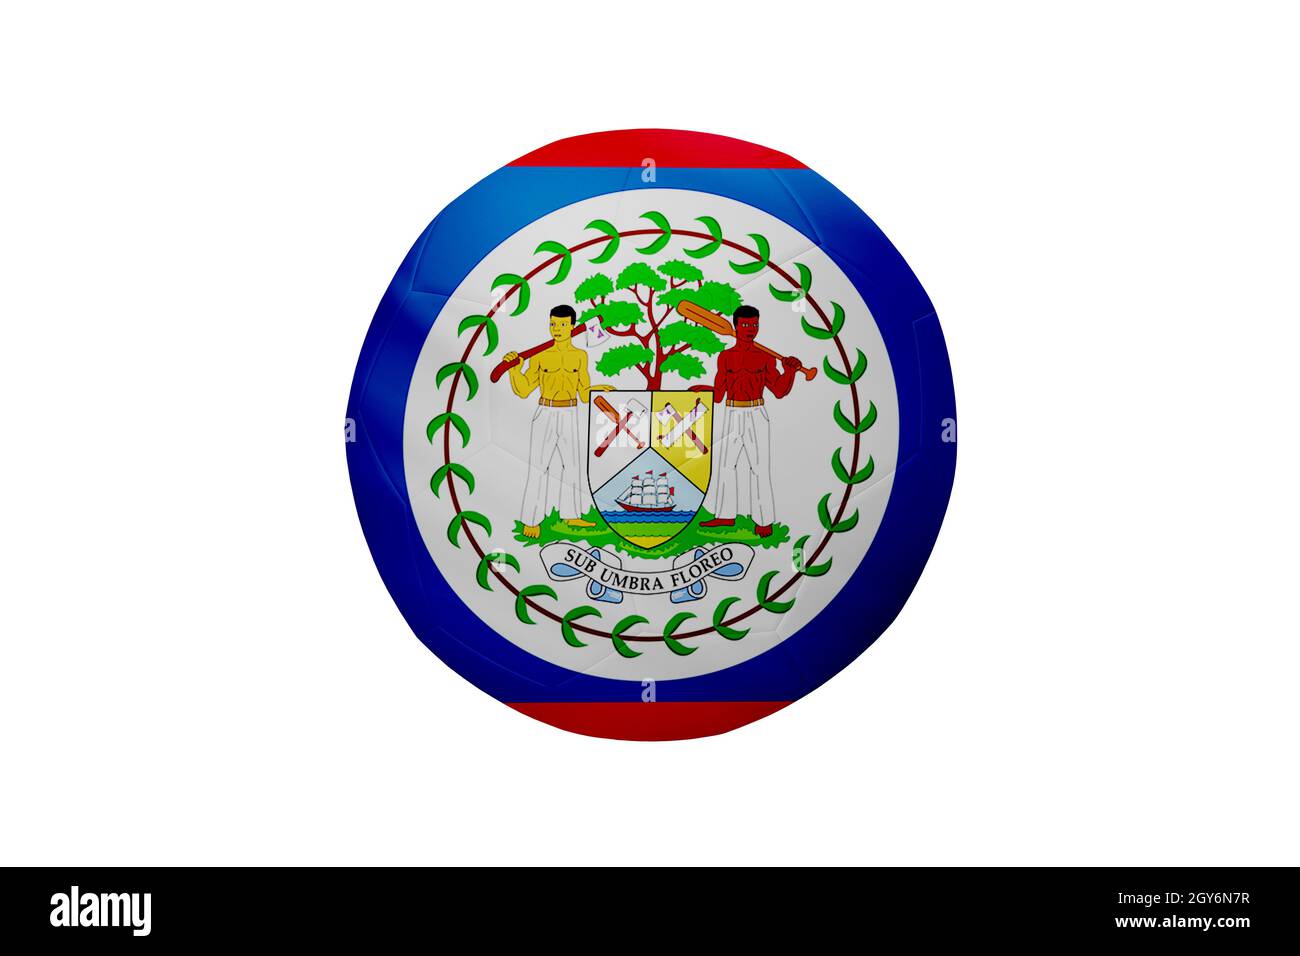 Fußball in den Farben der Belize-Flagge isoliert auf weißem Hintergrund. In einem konzeptionellen Meisterschaftsbild, das Belize unterstützt. Stockfoto